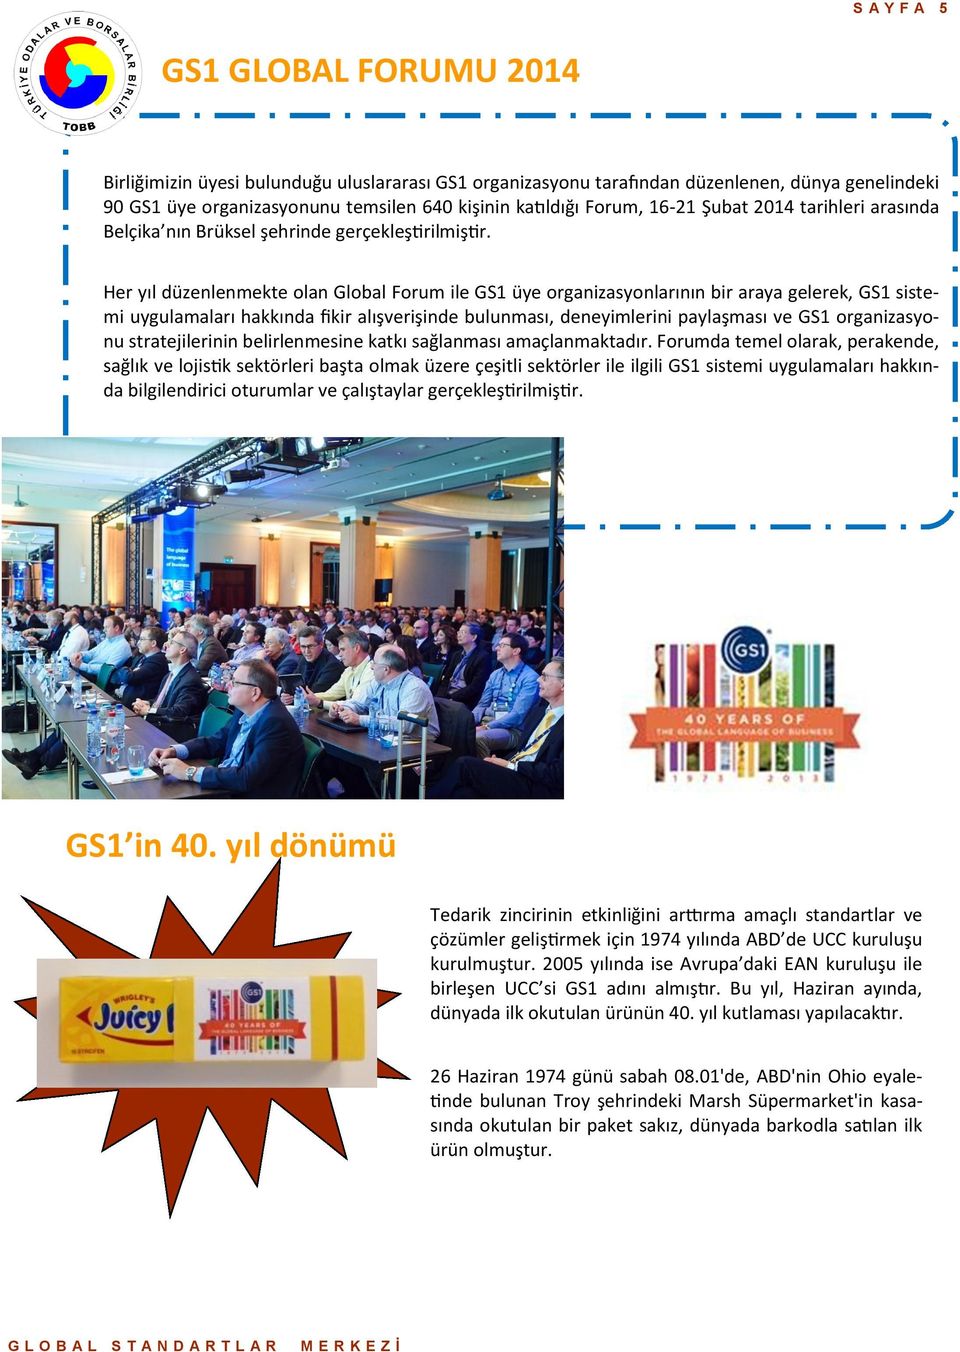 Her yıl düzenlenmekte olan Global Forum ile GS1 üye organizasyonlarının bir araya gelerek, GS1 sistemi uygulamaları hakkında fikir alışverişinde bulunması, deneyimlerini paylaşması ve GS1